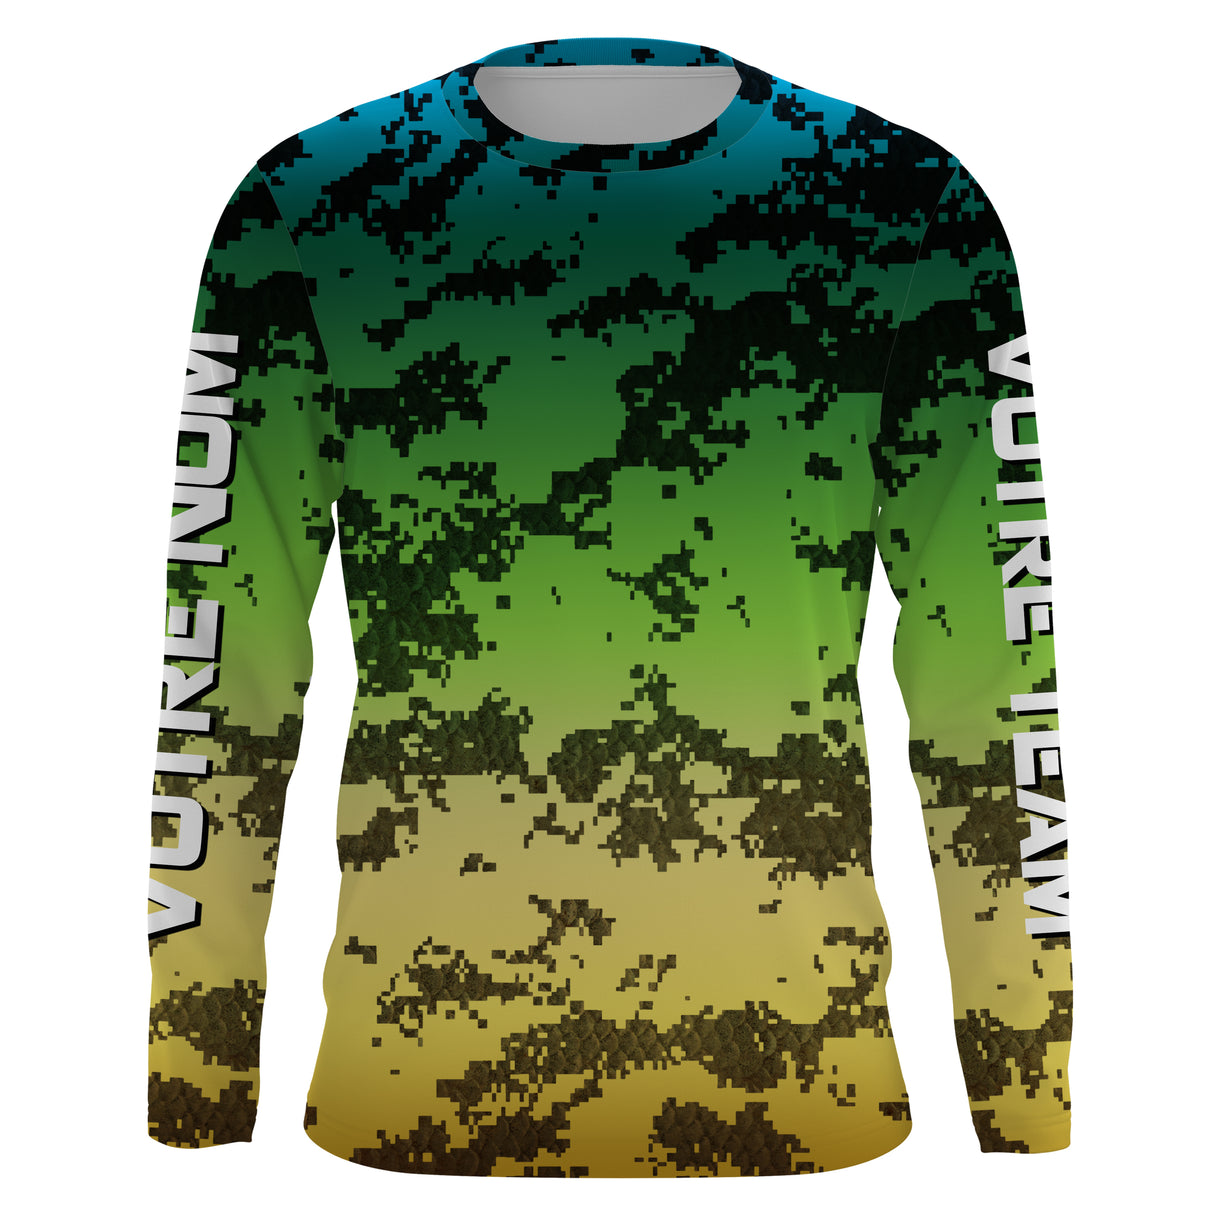 Cadeau Pêcheur, Camouflage T Shirt, Personnaliser Avec Prénom Et Equipe - VEPENP015 T-shirt Anti UV Manches Longues